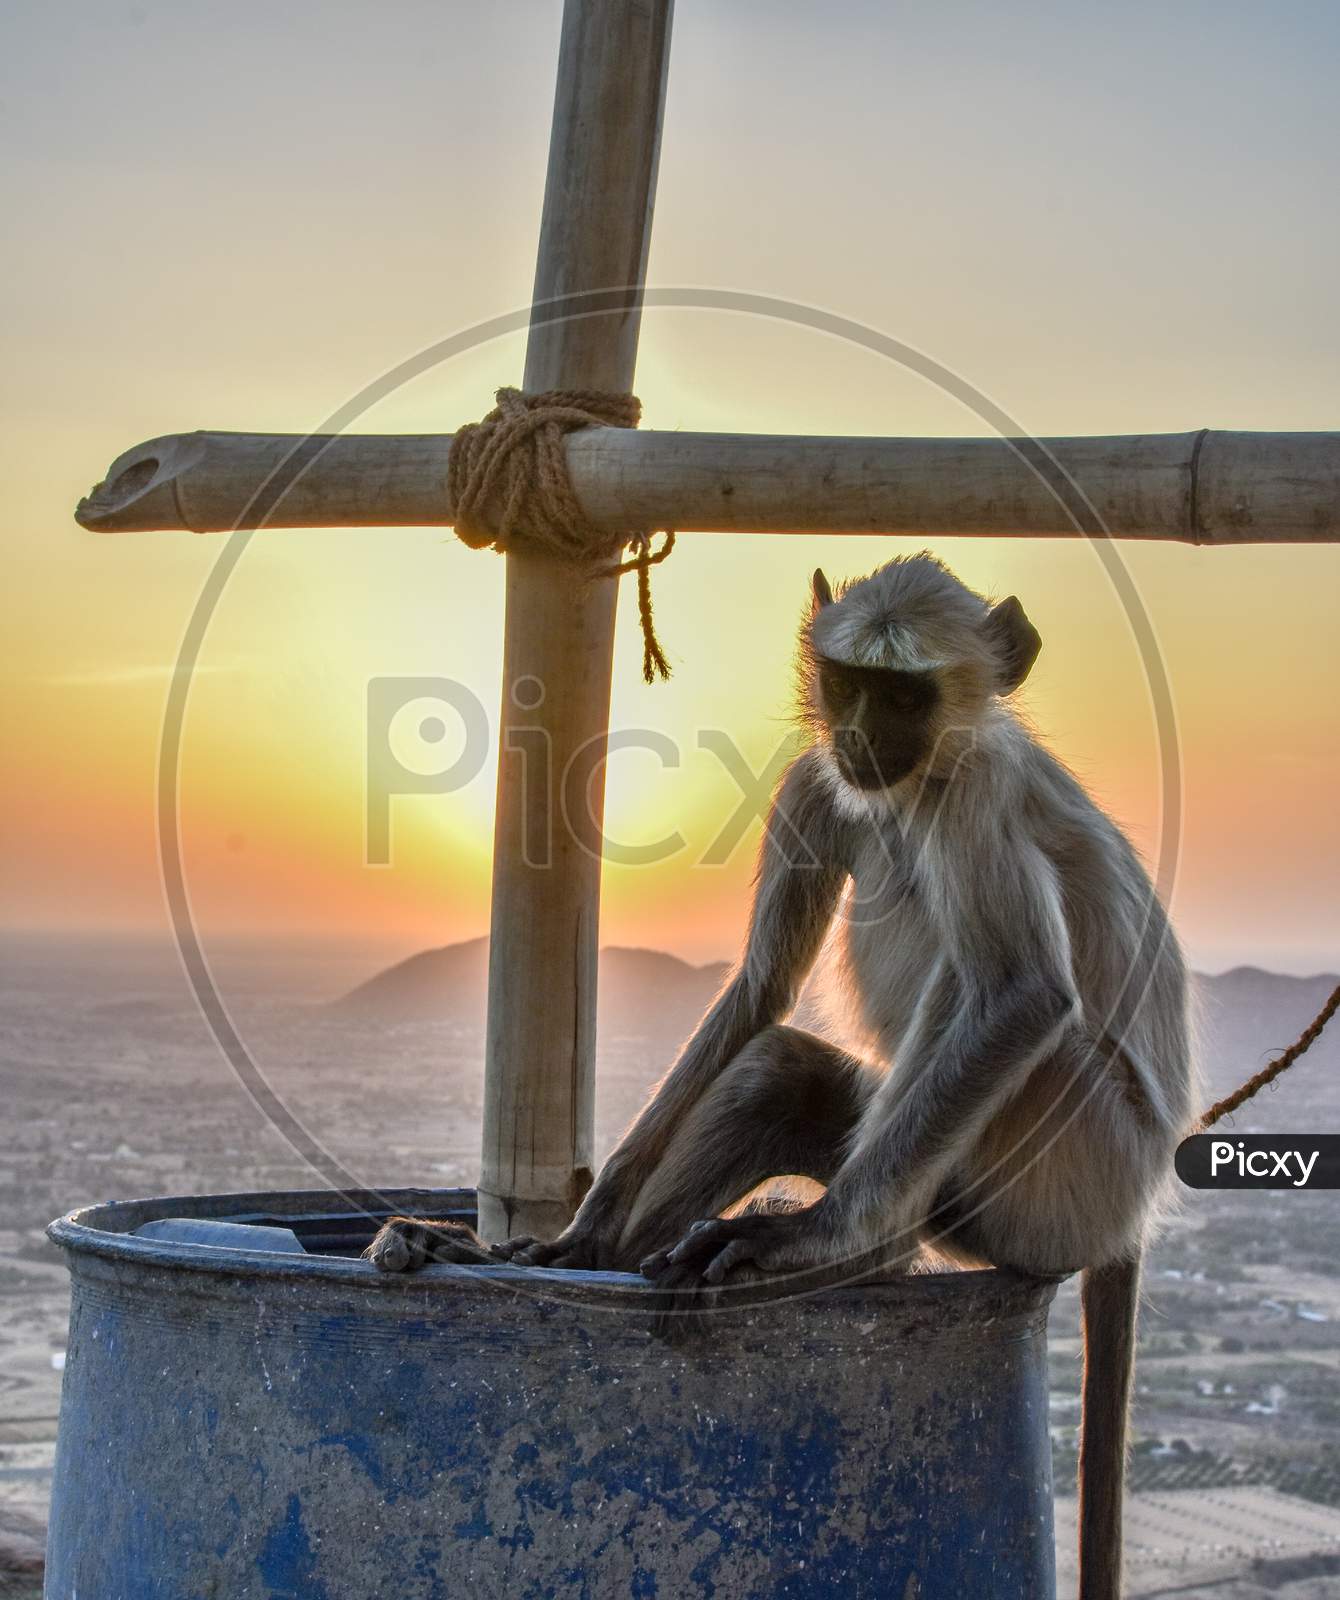 sunset and monkey